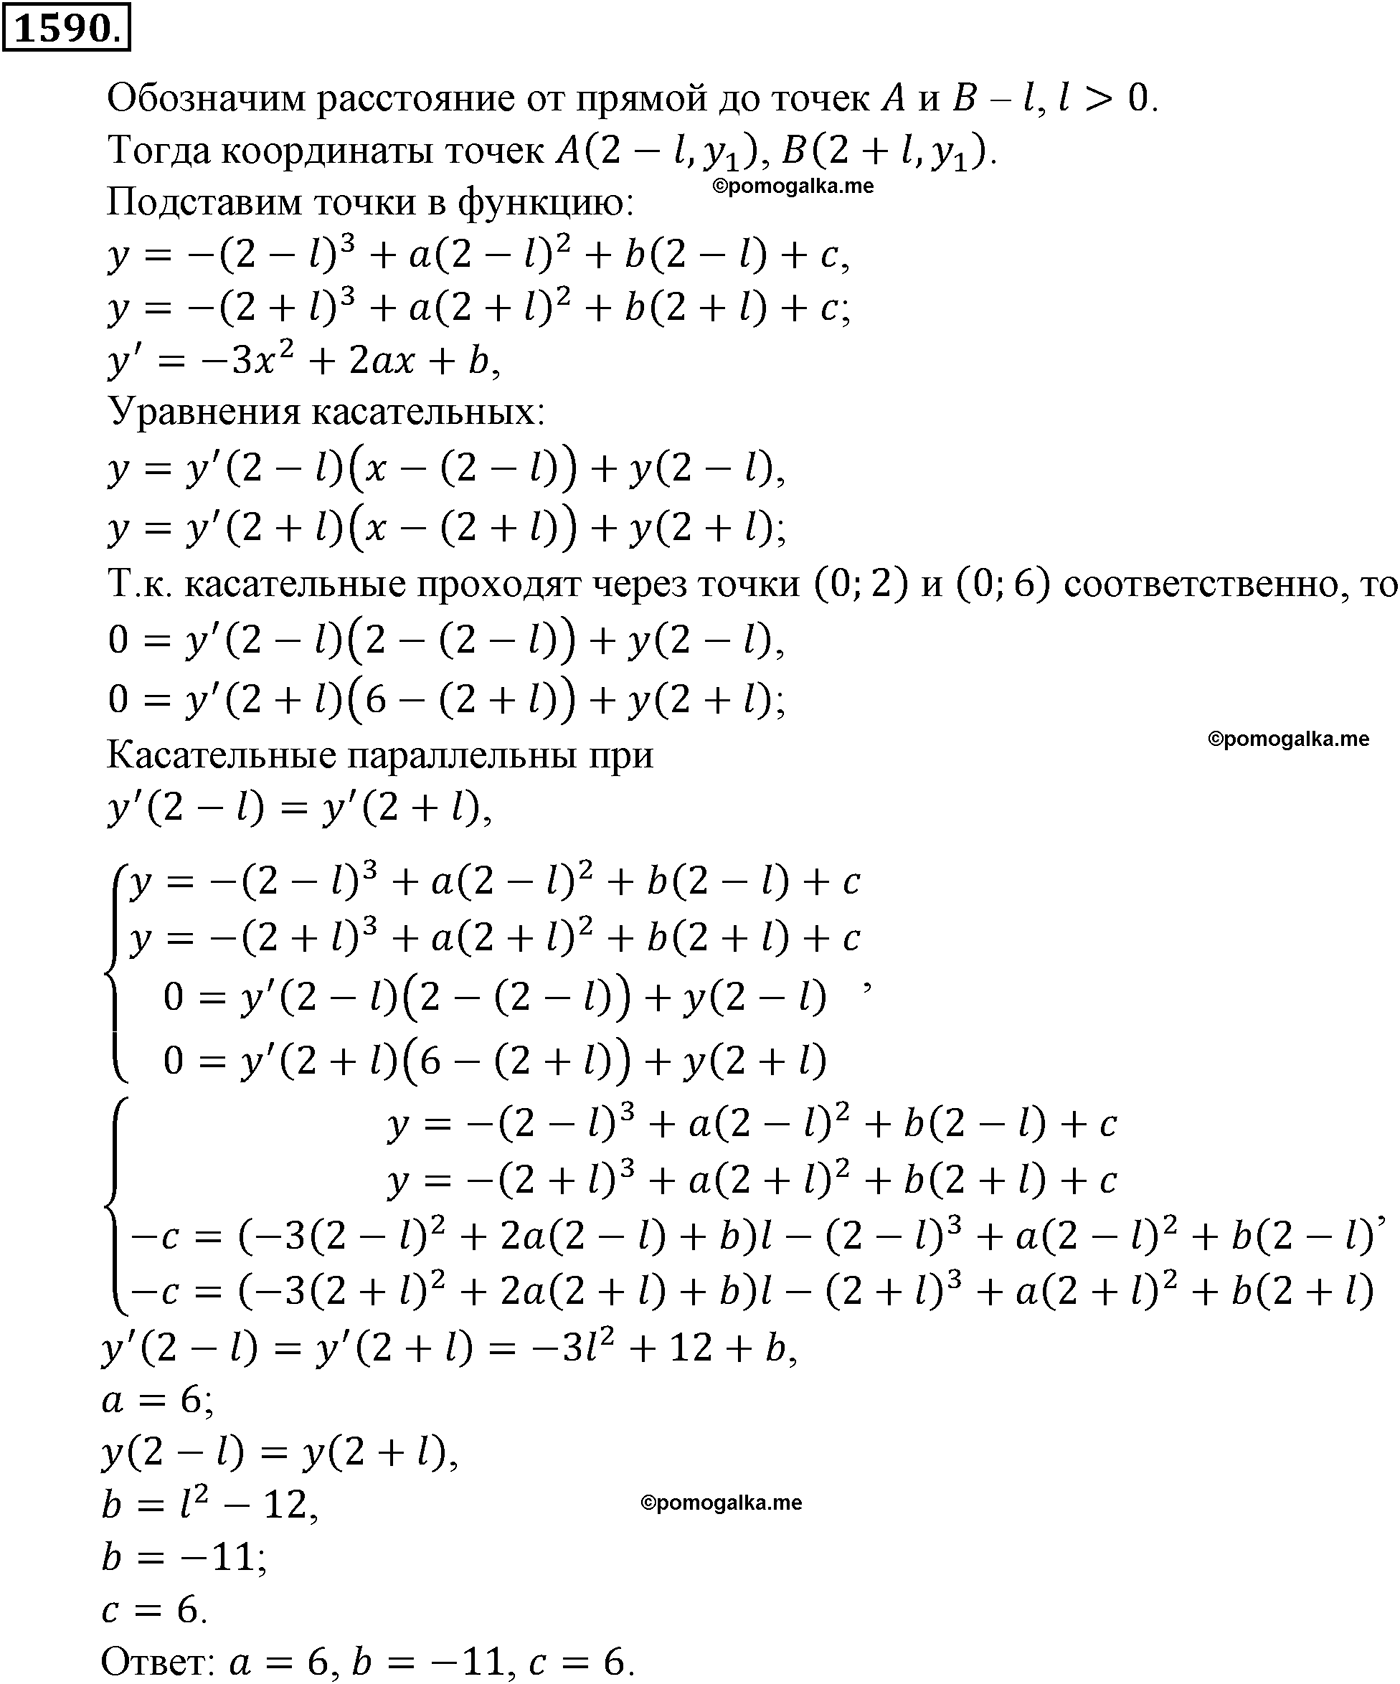 разбор задачи №1590 по алгебре за 10-11 класс из учебника Алимова, Колягина